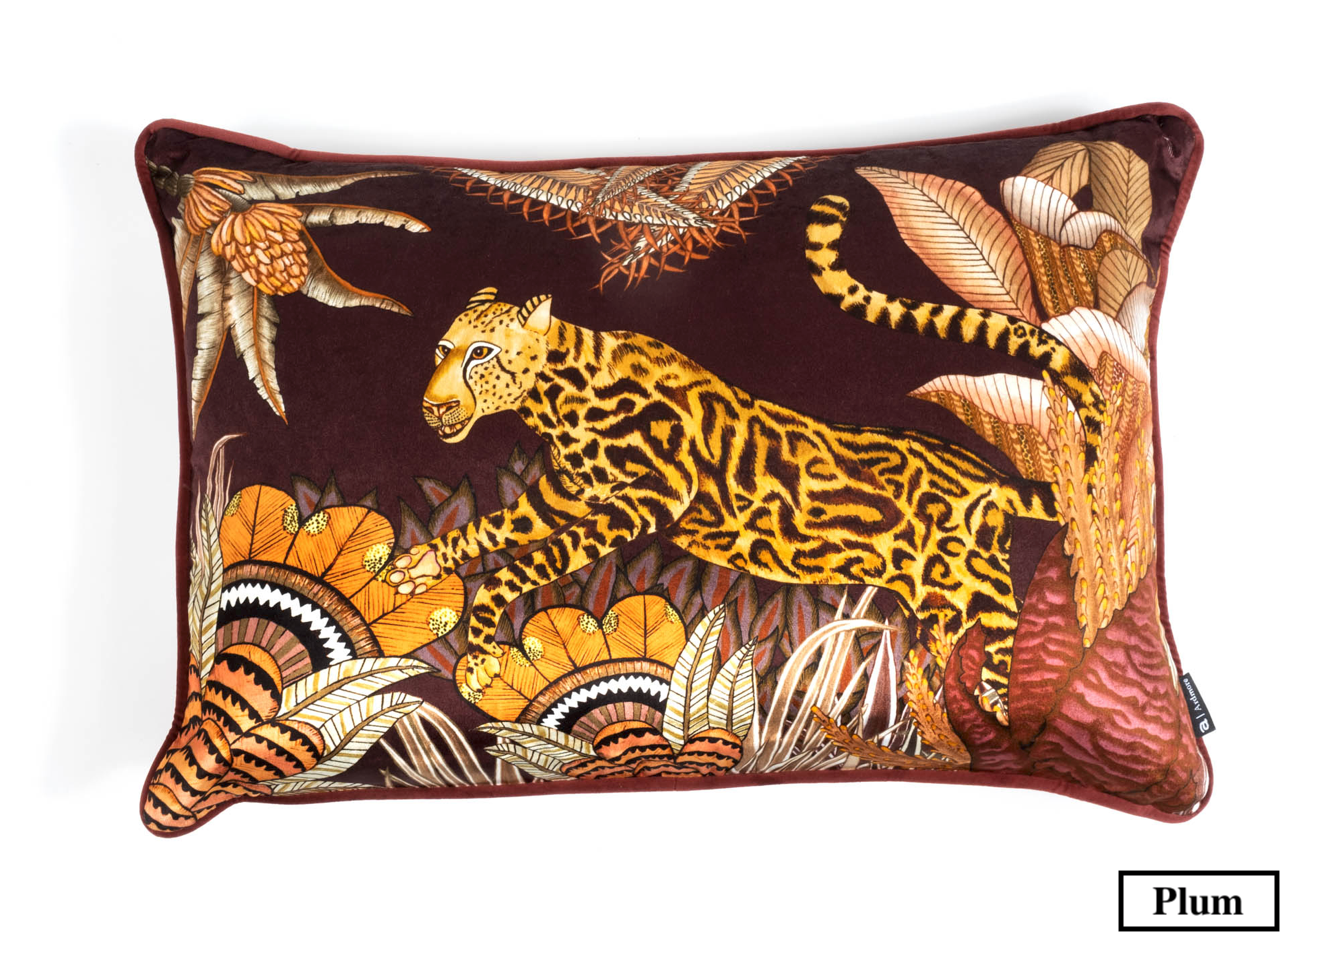 Ardmore Cheetah Kings velvet pillows from South Africa